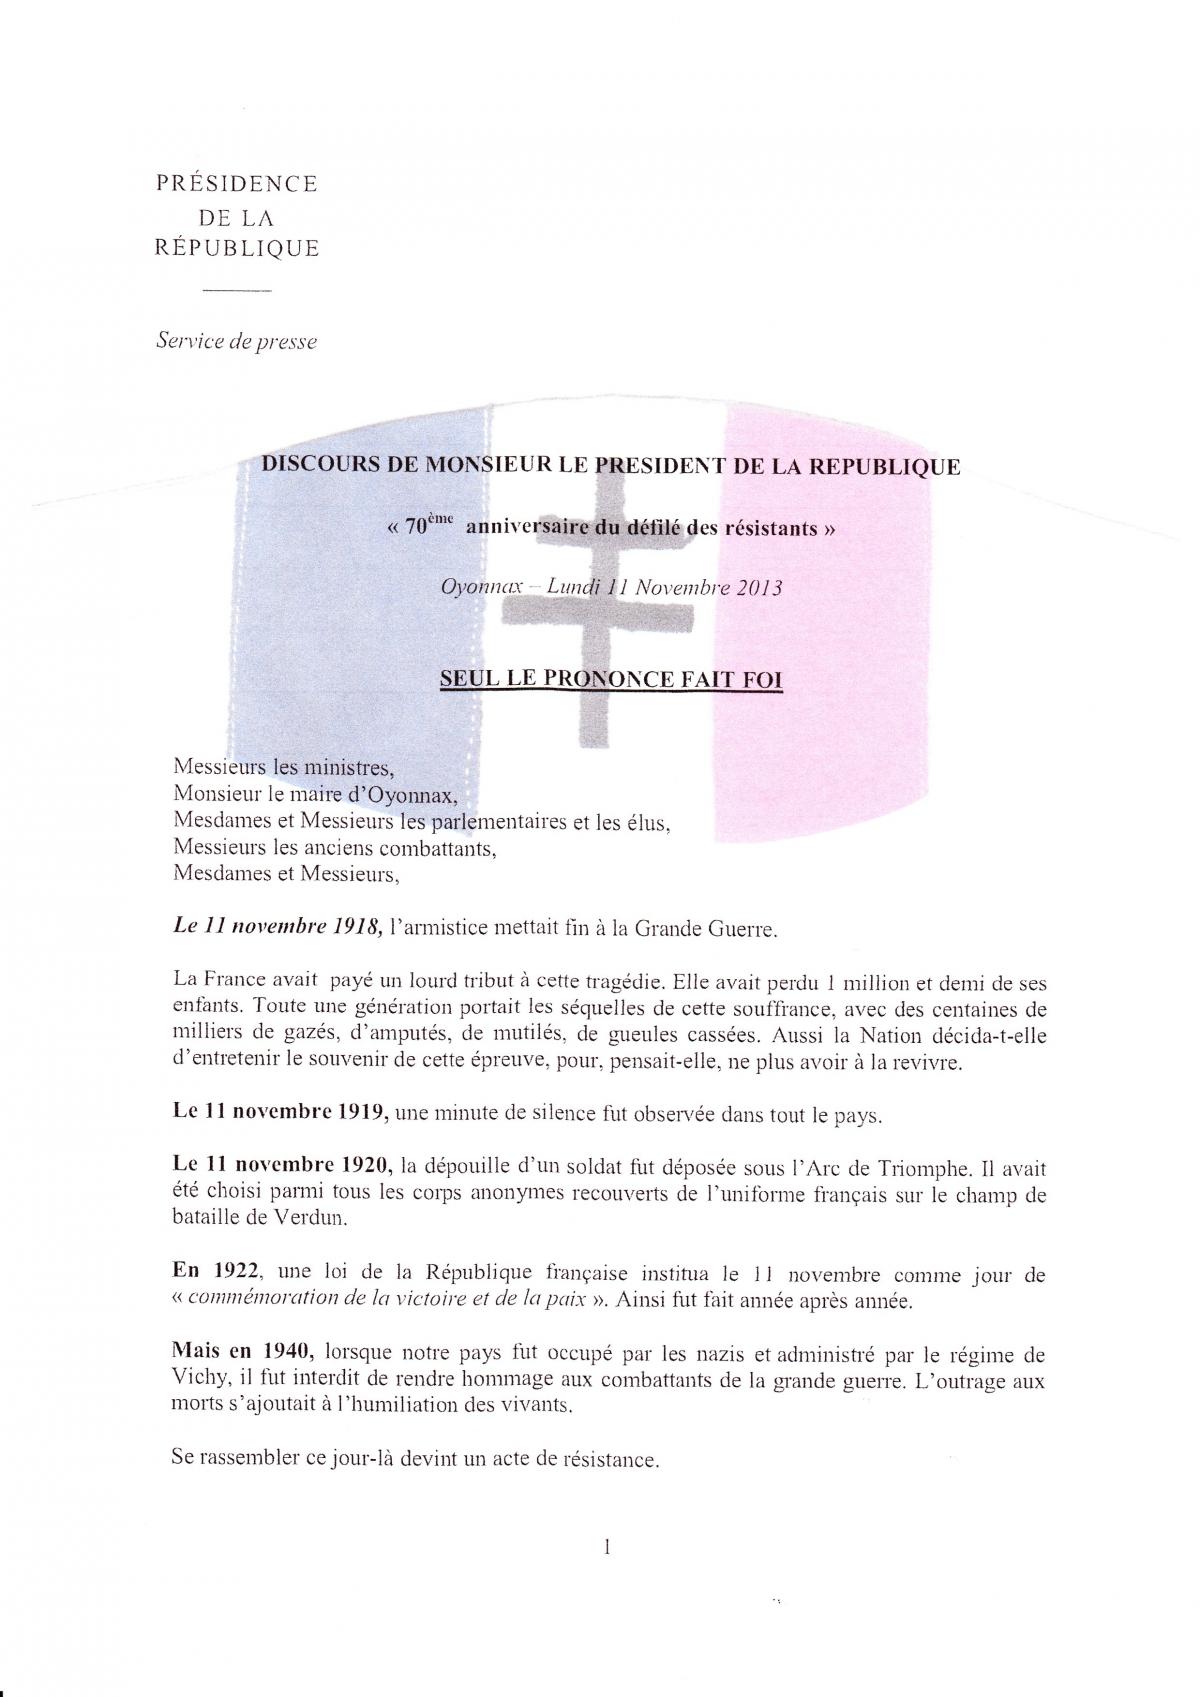  OYONNAX 11/11/2013 DISCOURS DE MONSIEUR LE PRESIDENT DE LA REPUBLIQUE FRANÇAISE  page 1/5